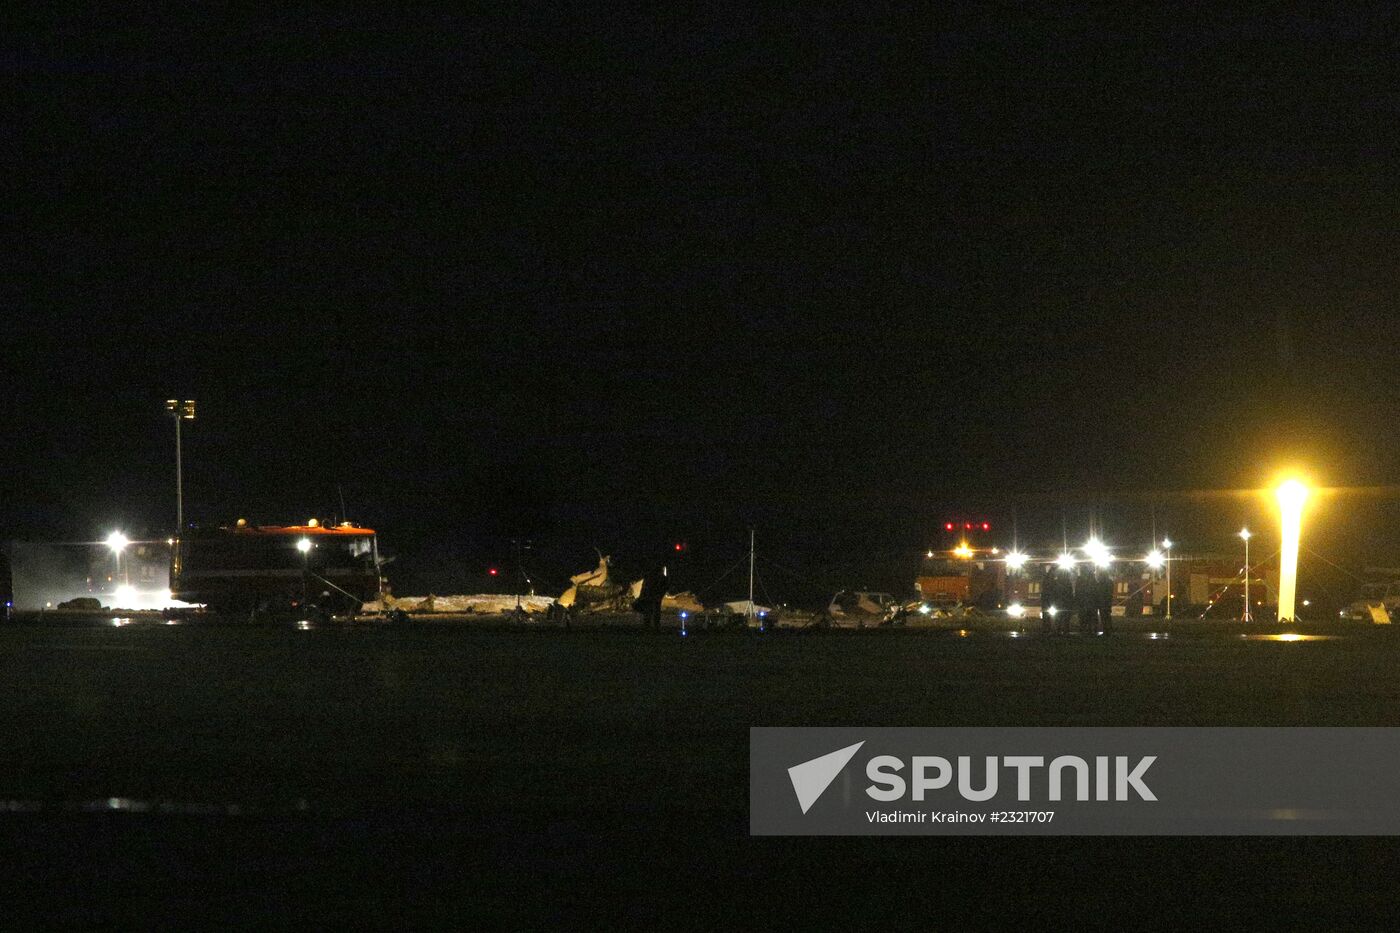 Passenger aircraft crashes during landing at Kazan airport, many dead